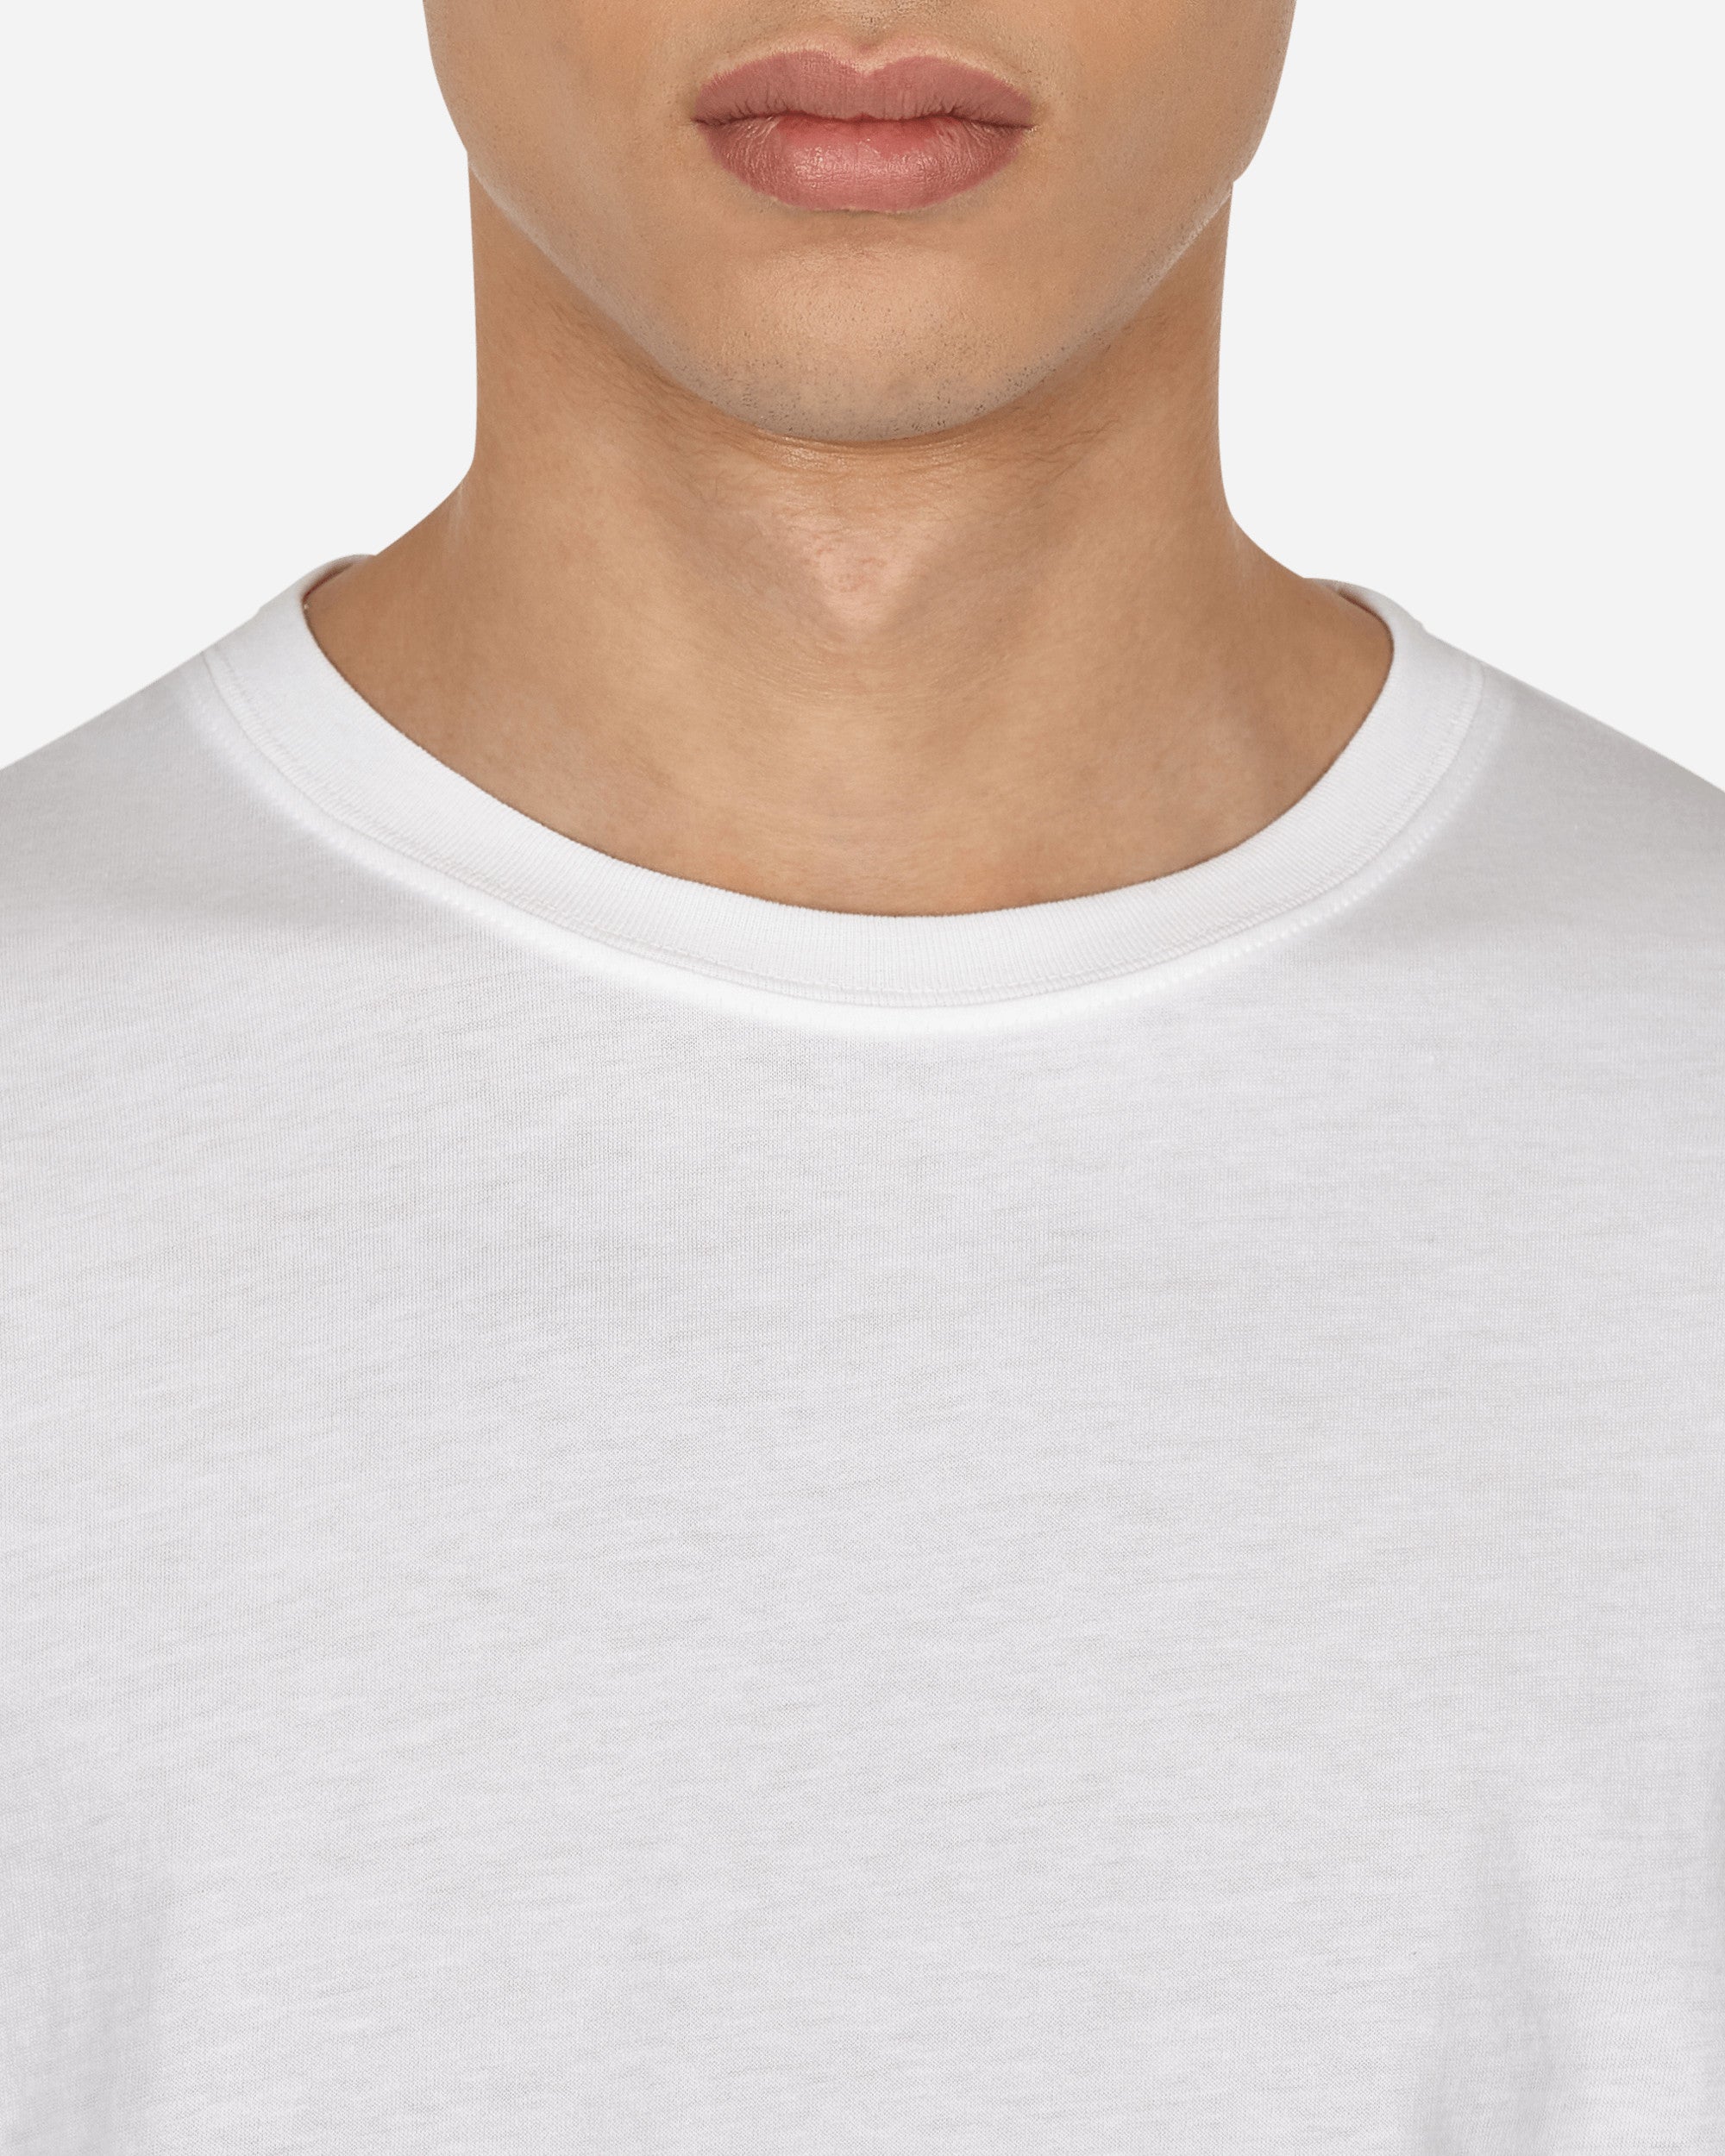 Dries Van Noten Hertz 4600 White  T-Shirts Shortsleeve 021185-4600 001